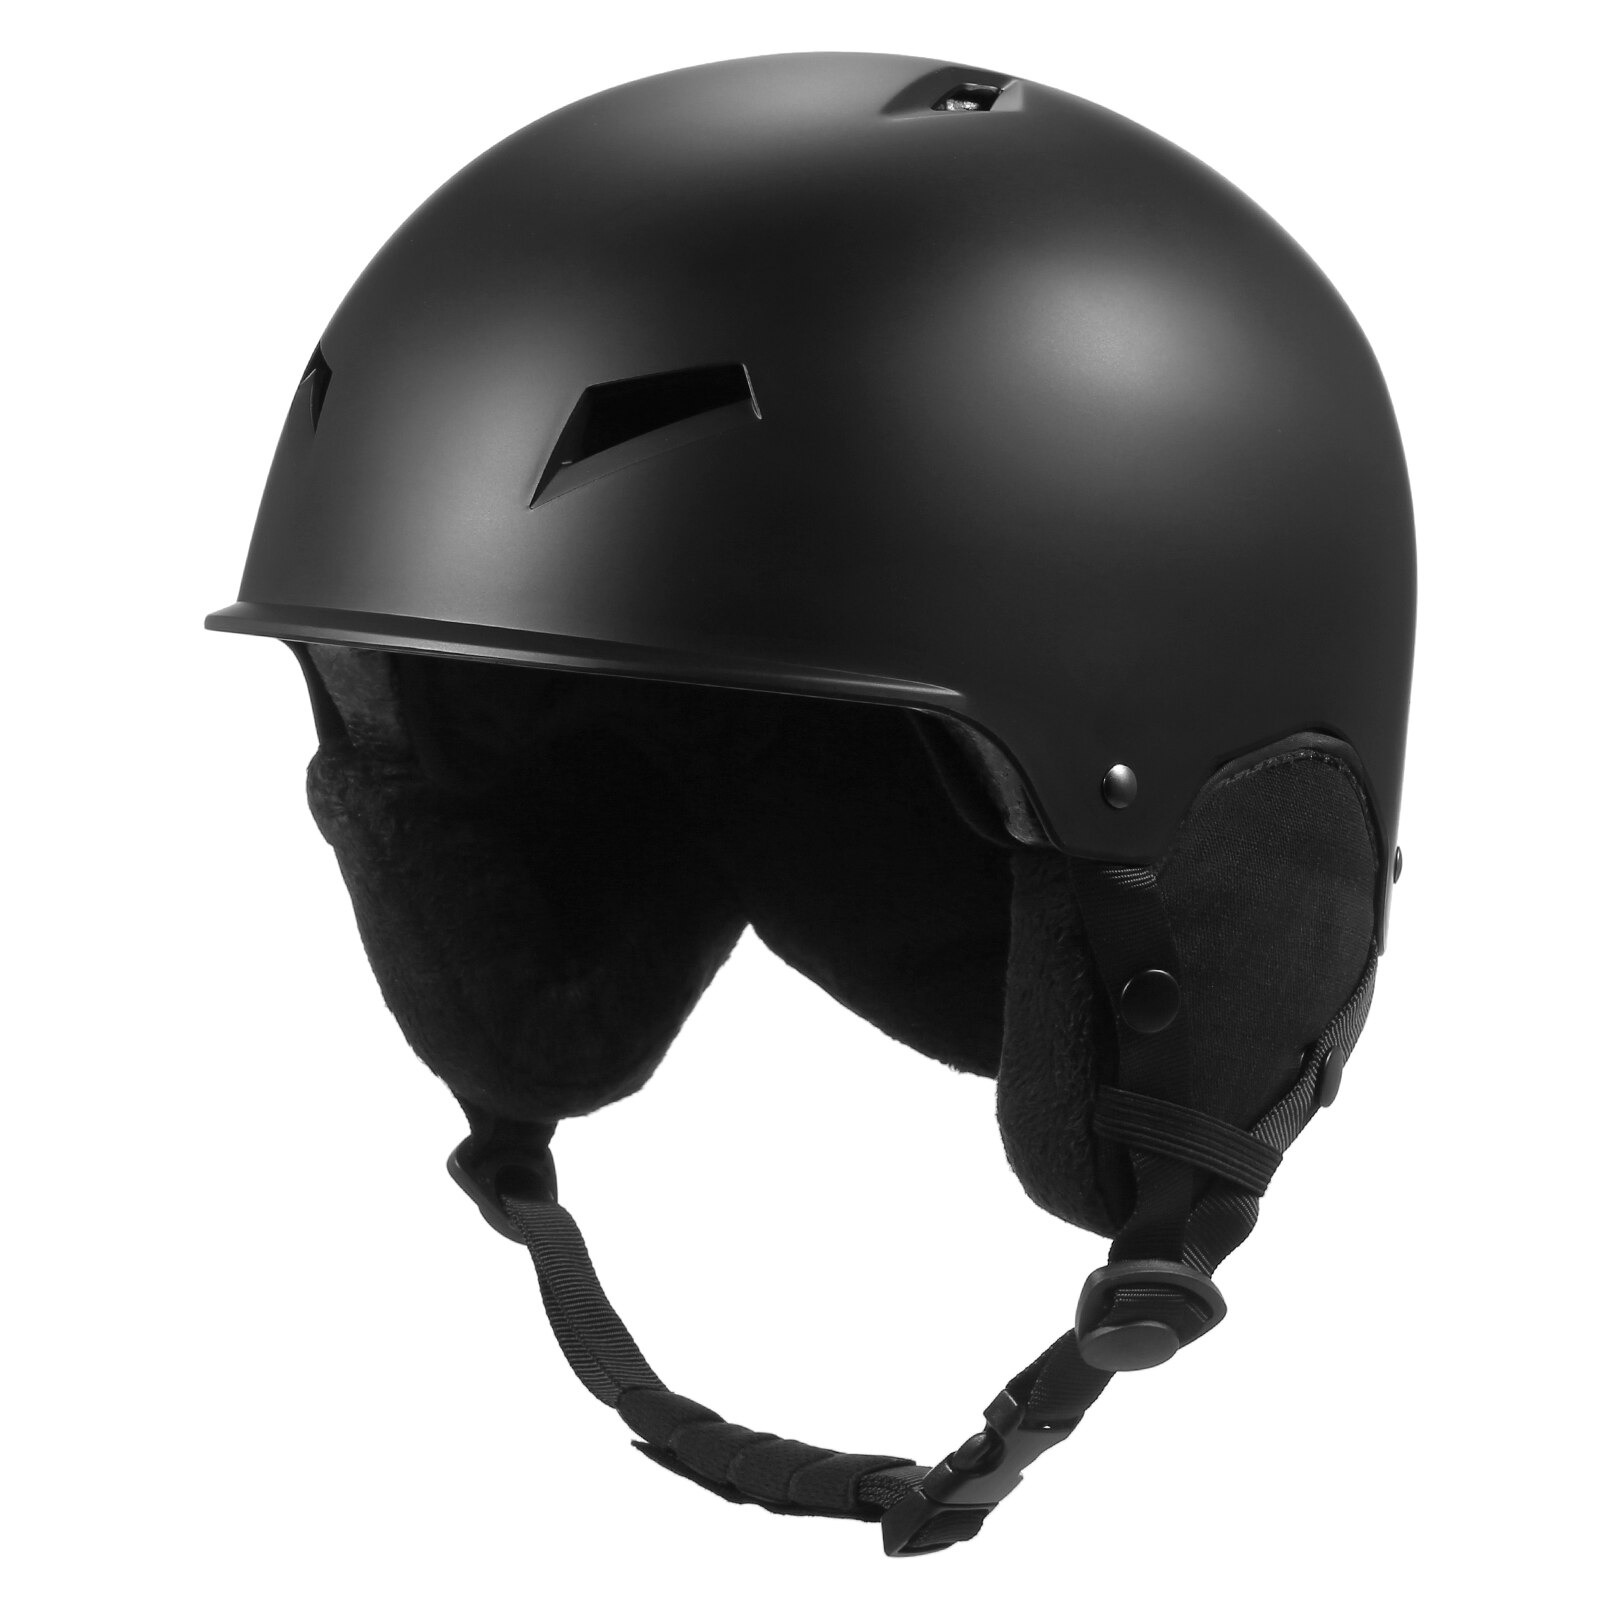 분리형 귀마개 장착 스노우 보드 헬멧 남녀 공용, 스키 헬멧 고글 고정 스트랩 스포츠 헬멧